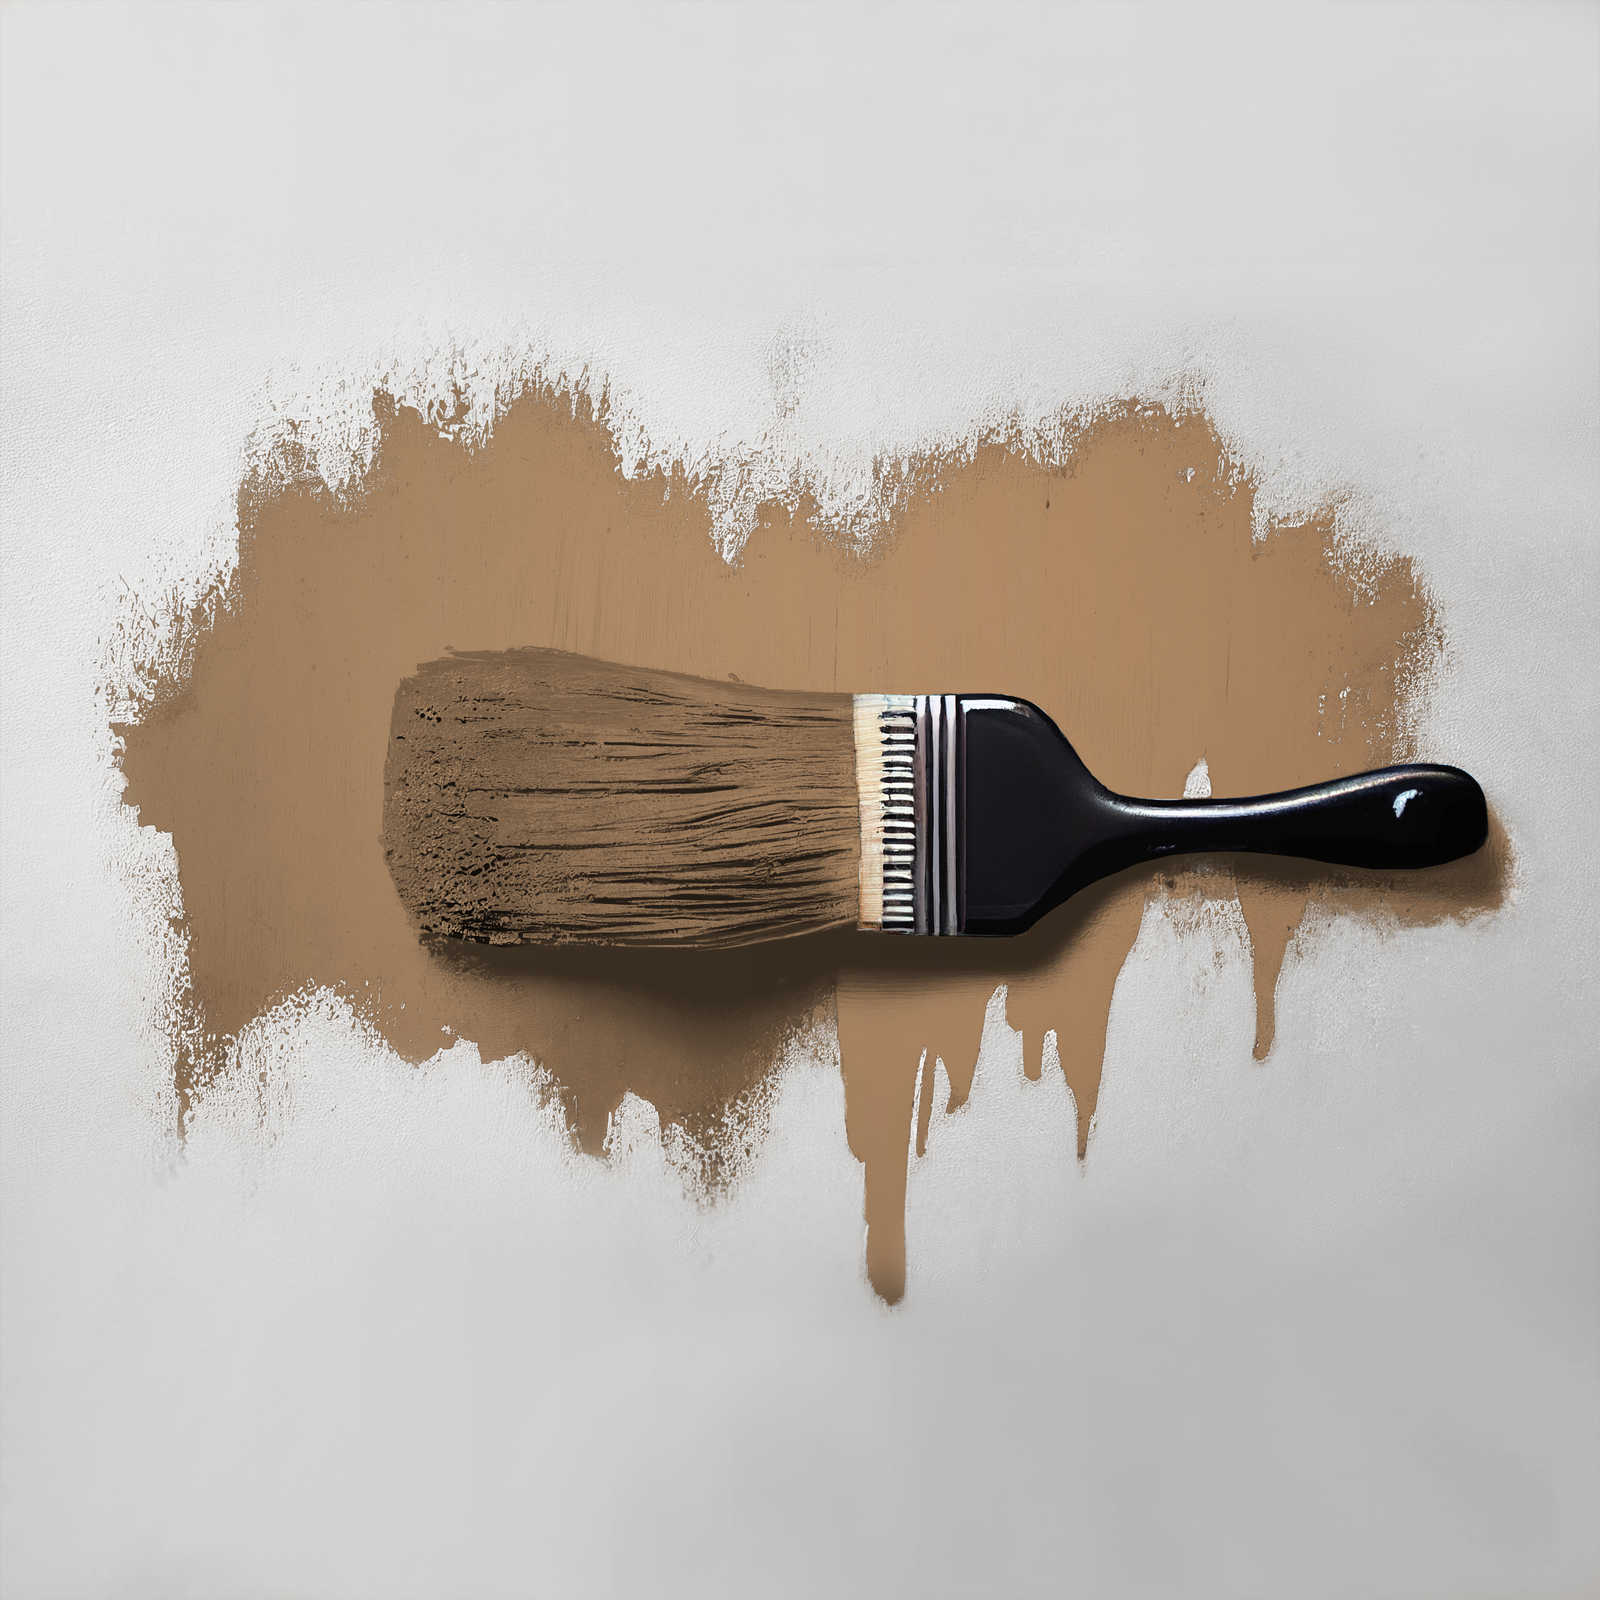             Pittura murale TCK6006 »Certain Cinnamon« in marrone dorato forte – 5,0 litri
        